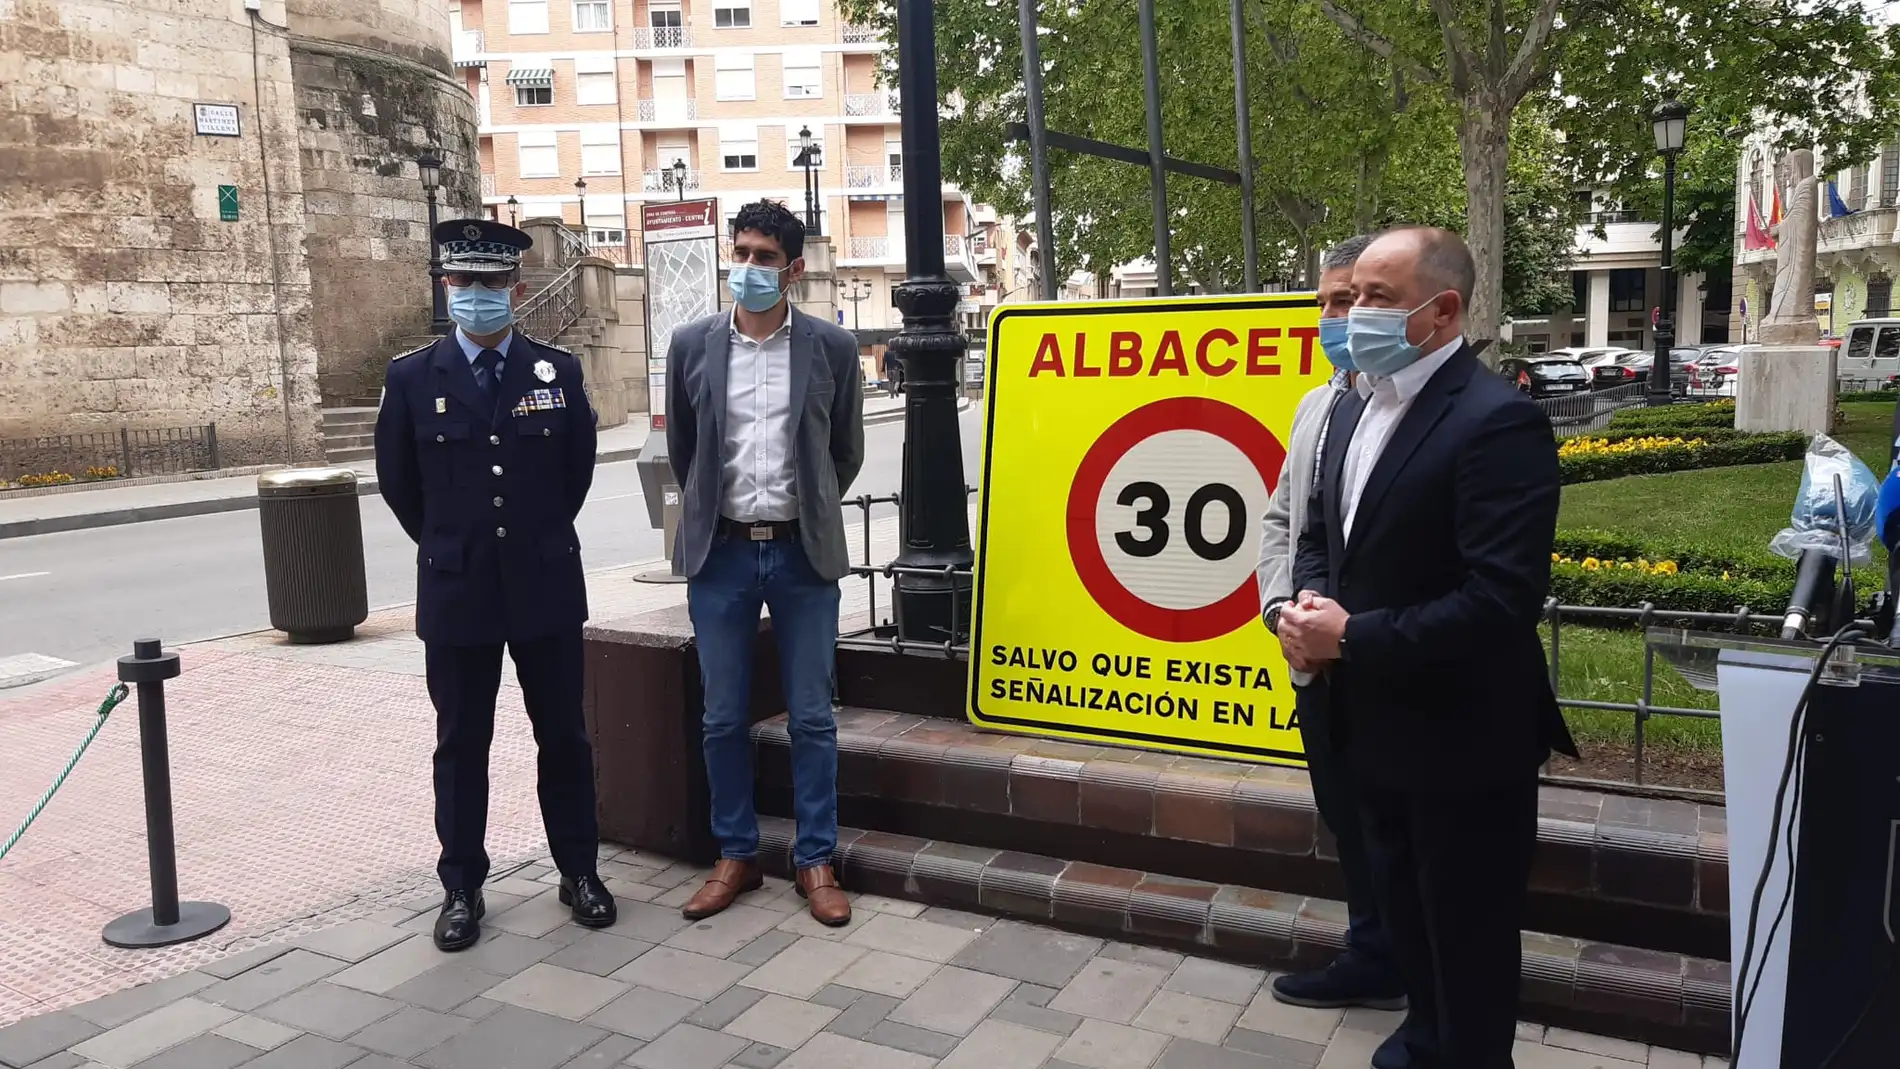 Ningún fallecido en accidente de tráfico en Albacete en 2020 gracias al límite de velocidad de 30 km/h